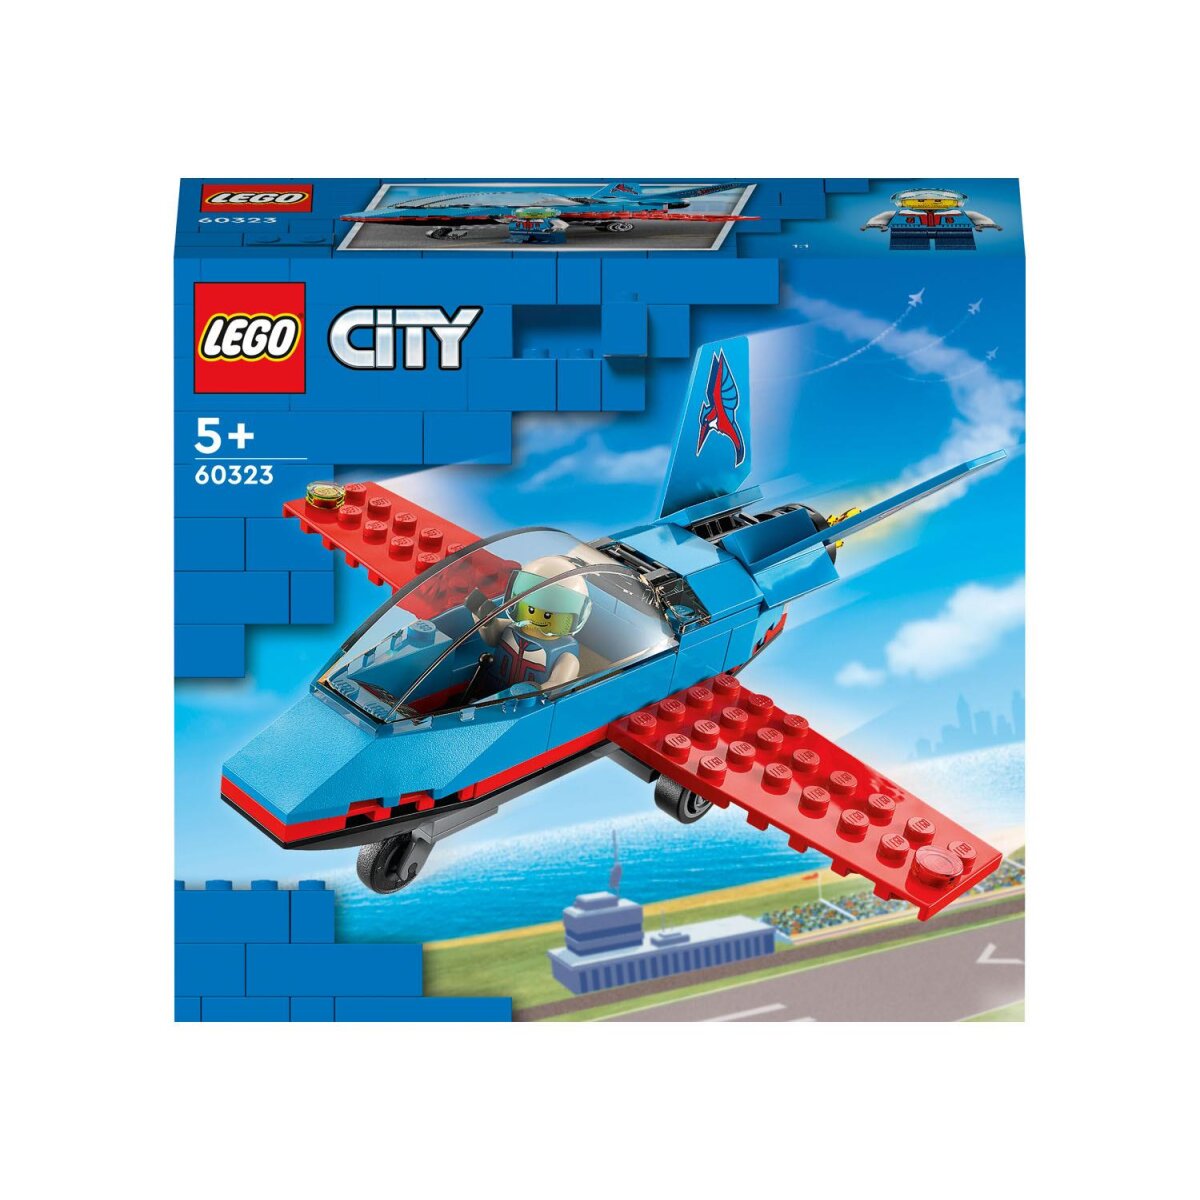 »Stuntflugzeug« City € Lego - neuwertig, B-Ware 60323 7,99